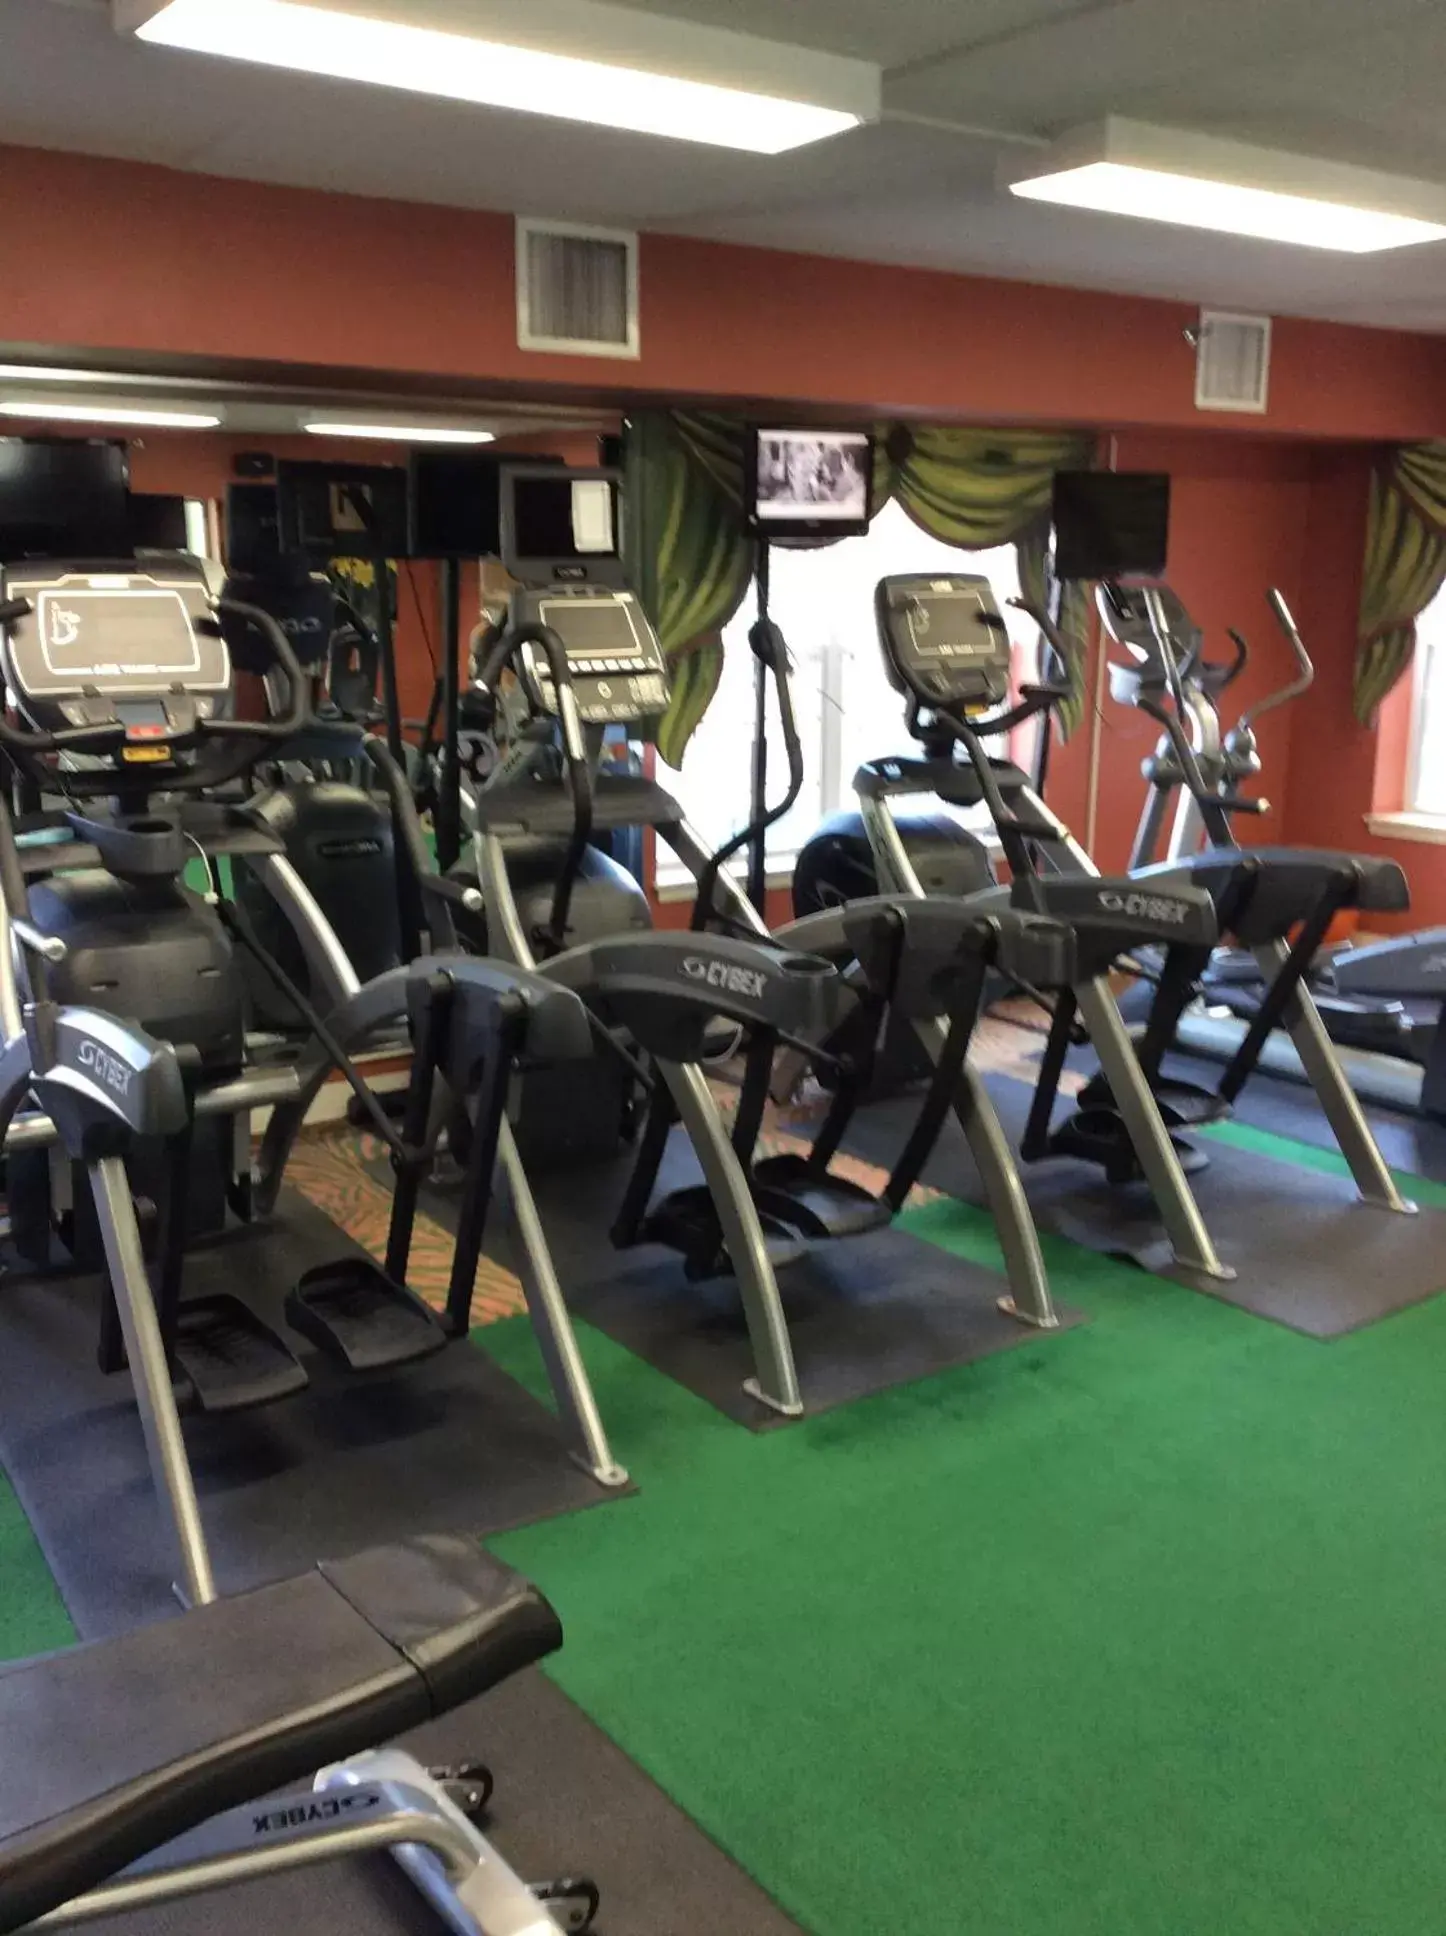 Fitness centre/facilities, Fitness Center/Facilities in Senator Inn & Spa